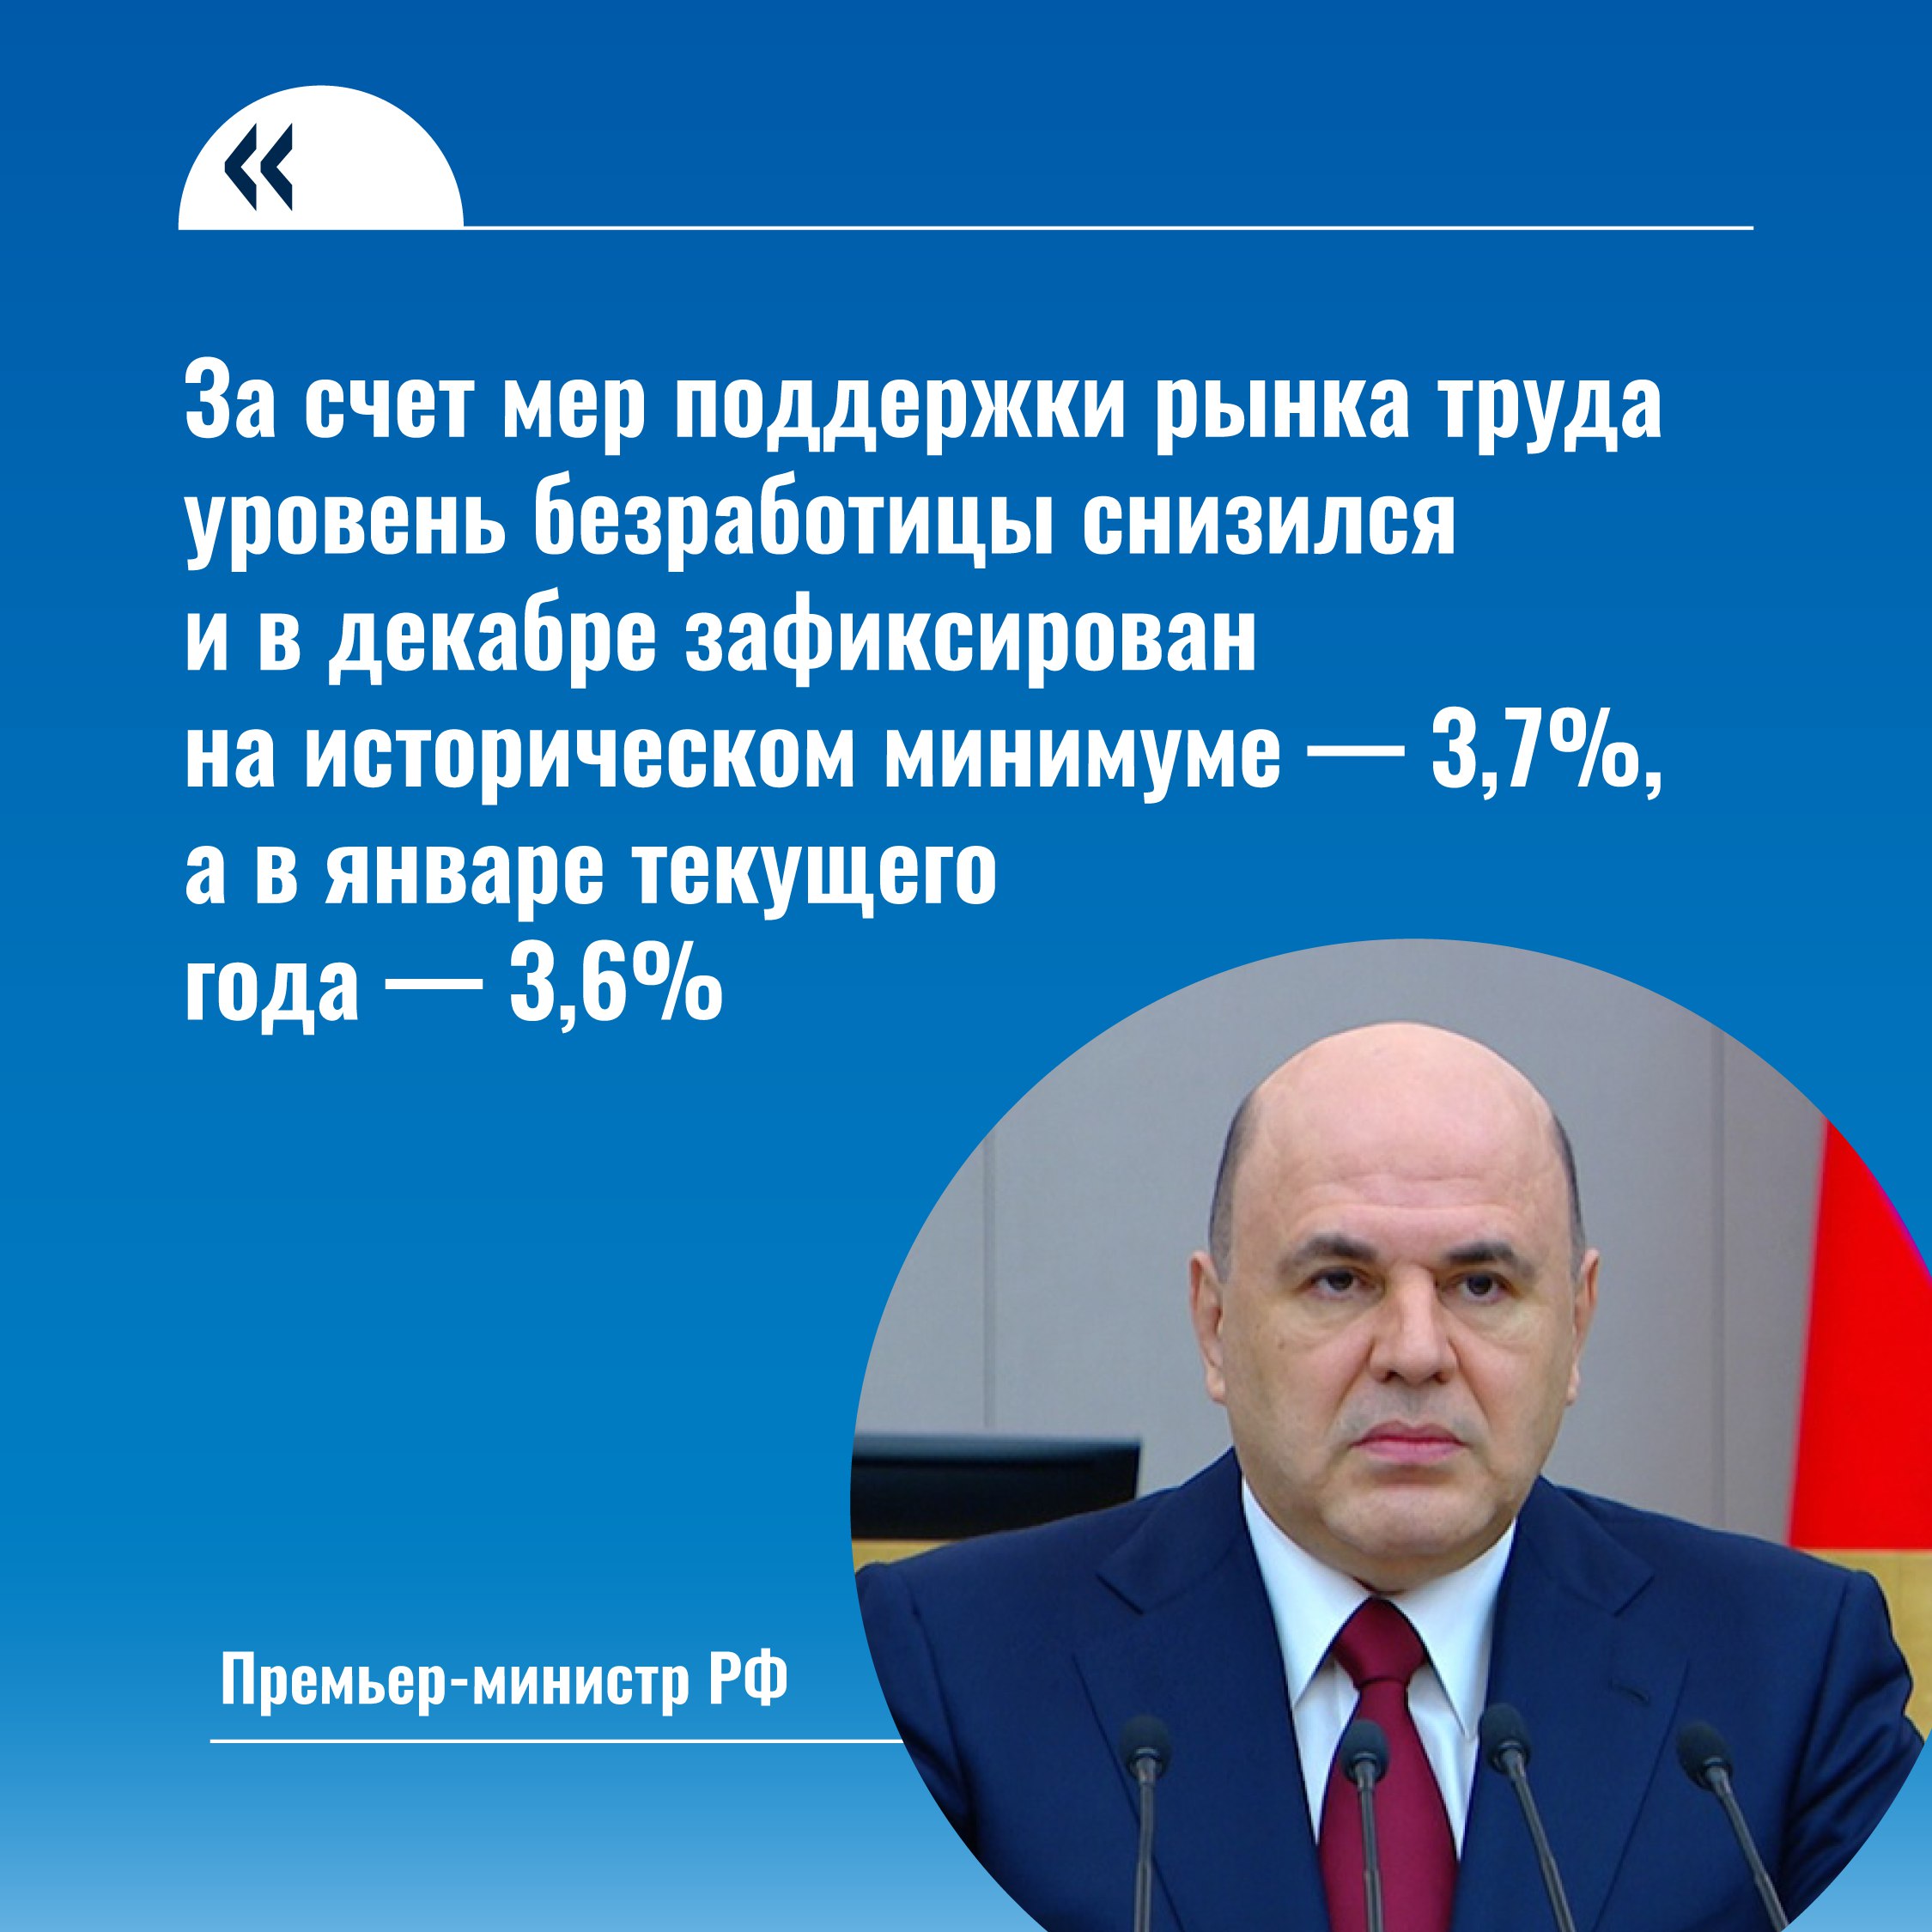 Снижение уровня безработицы – одна из ключевых задач Правительства РФ. Об этом рассказал премьер-министр Михаил Мишустин в своем ежегодном докладе